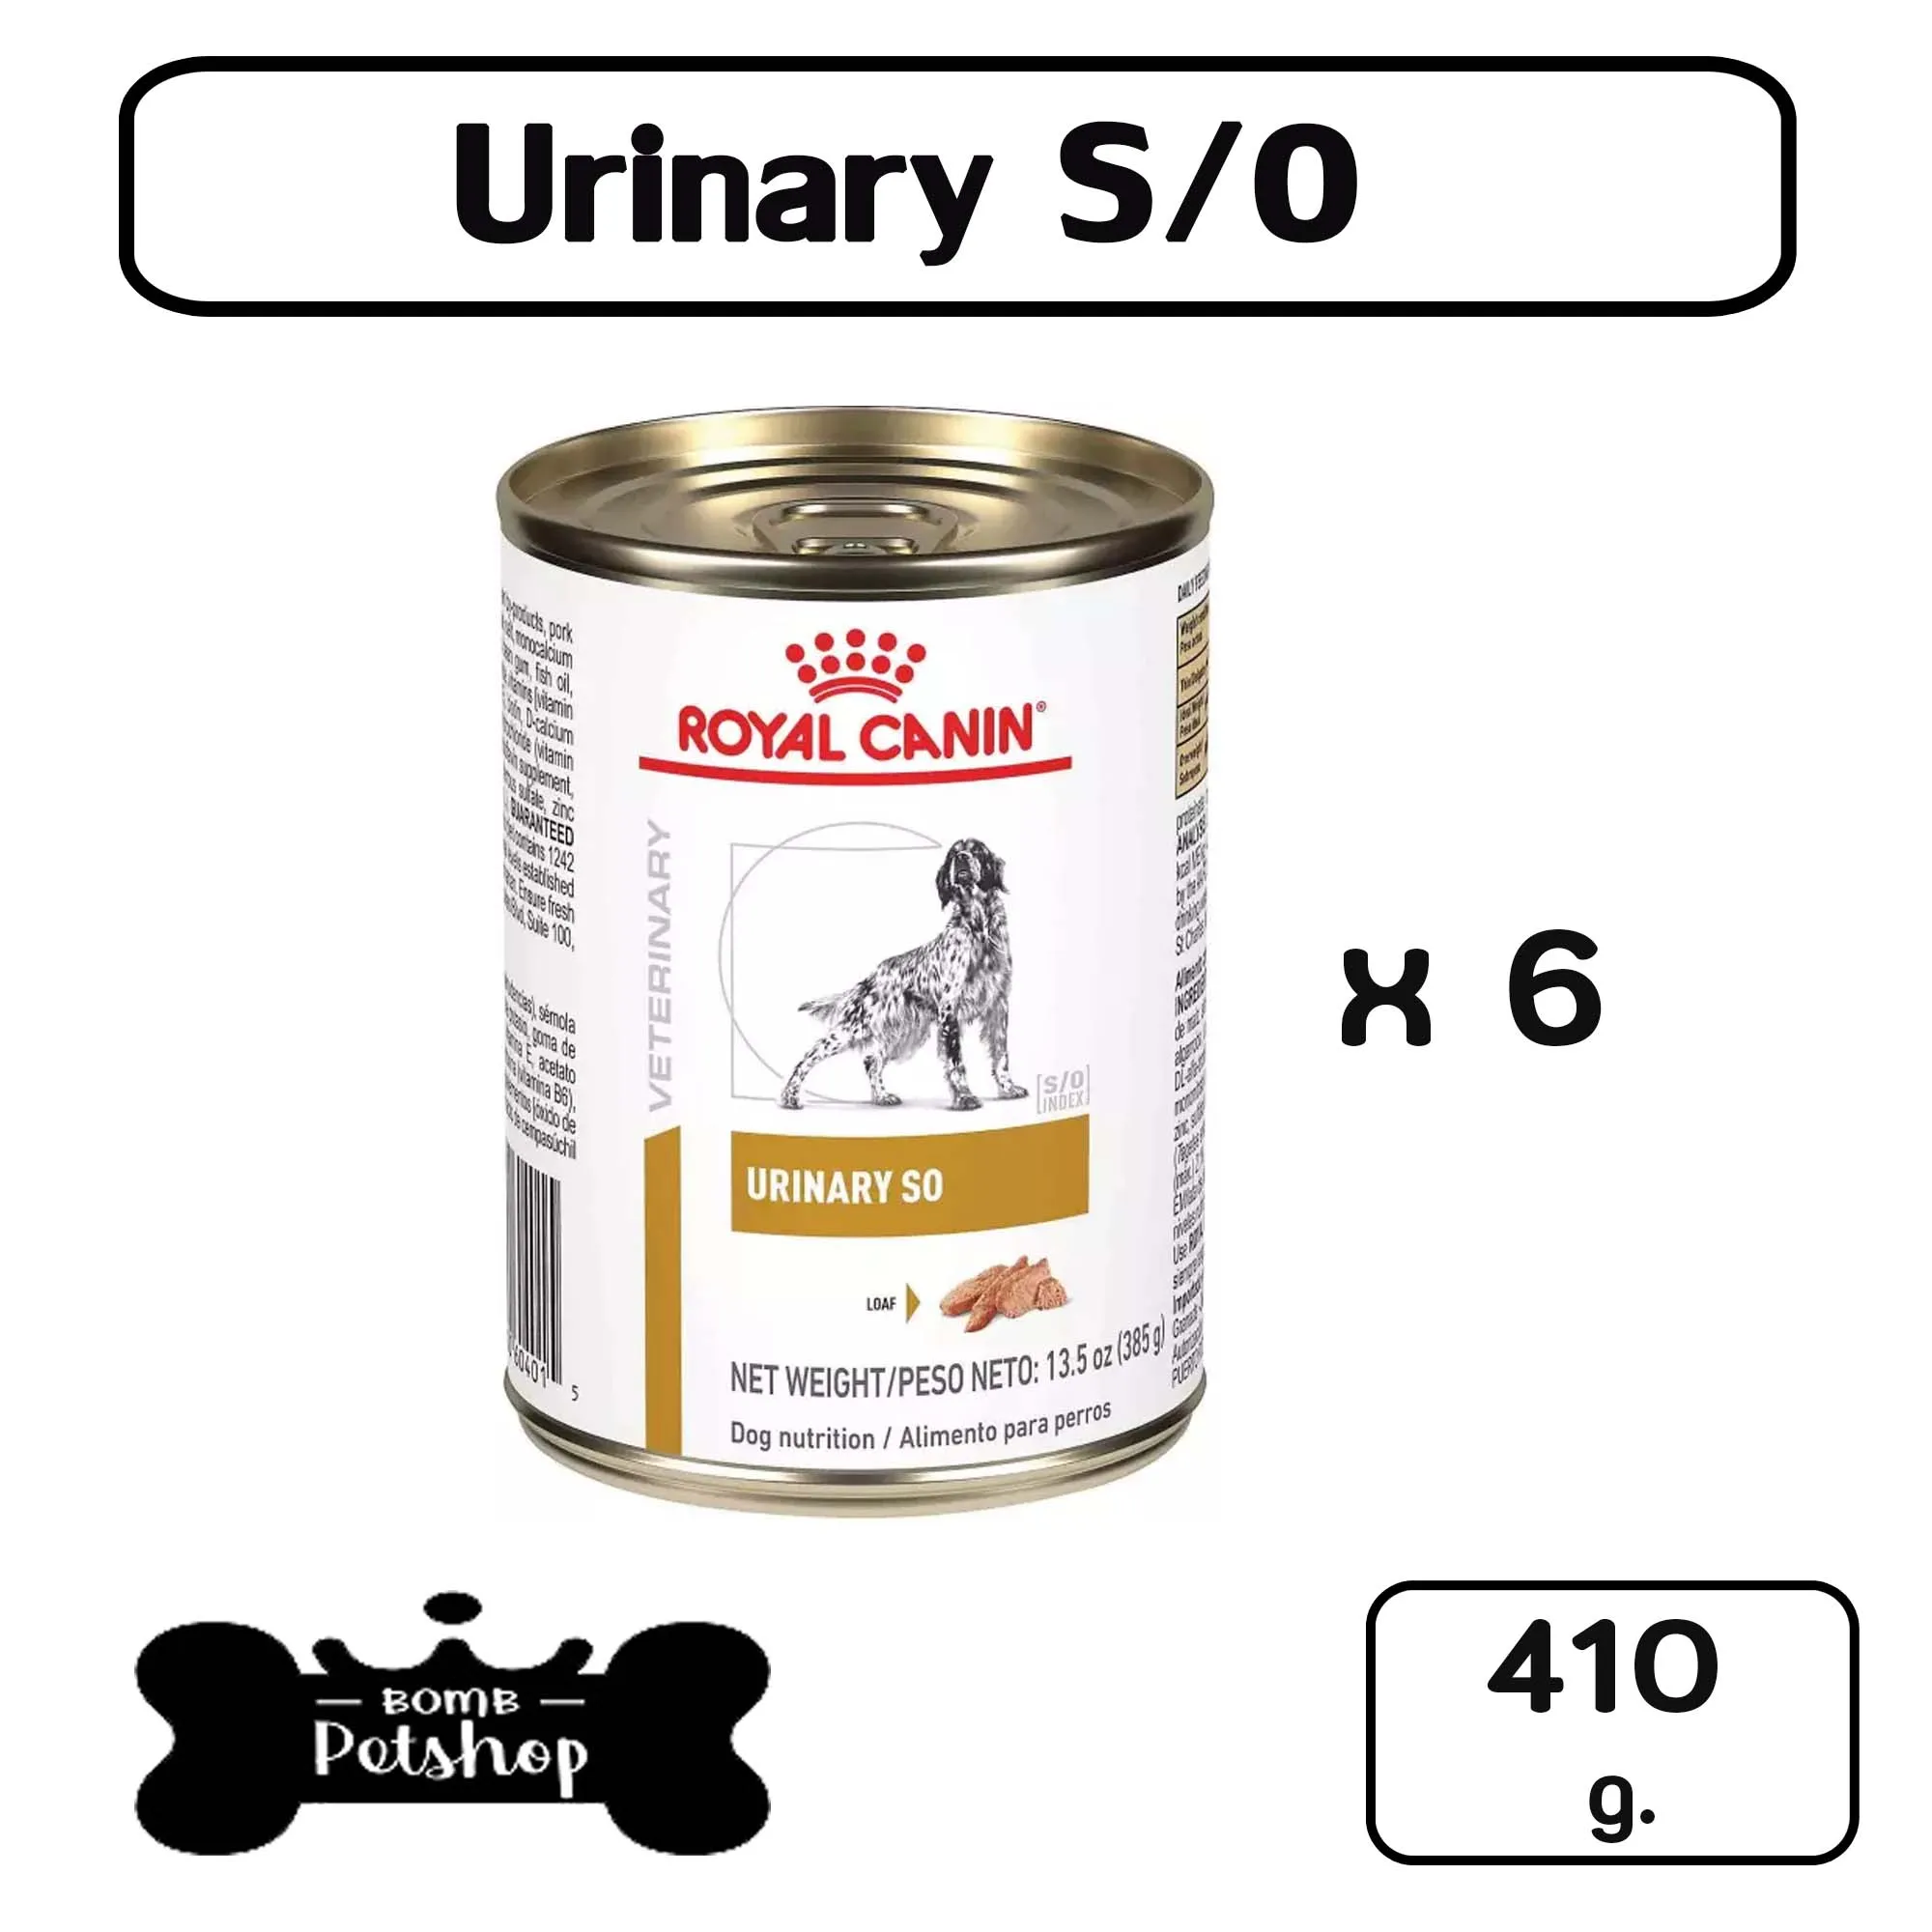 Royal Canin Urinary S/O Can Wet Canned Dog Food อาหารสุนัข นิ่วกระเพาะปัสสาวะ แบบกระป๋อง 410g x 5 cans แถมฟรี urinary 1 can ( รวม 6 กป. )